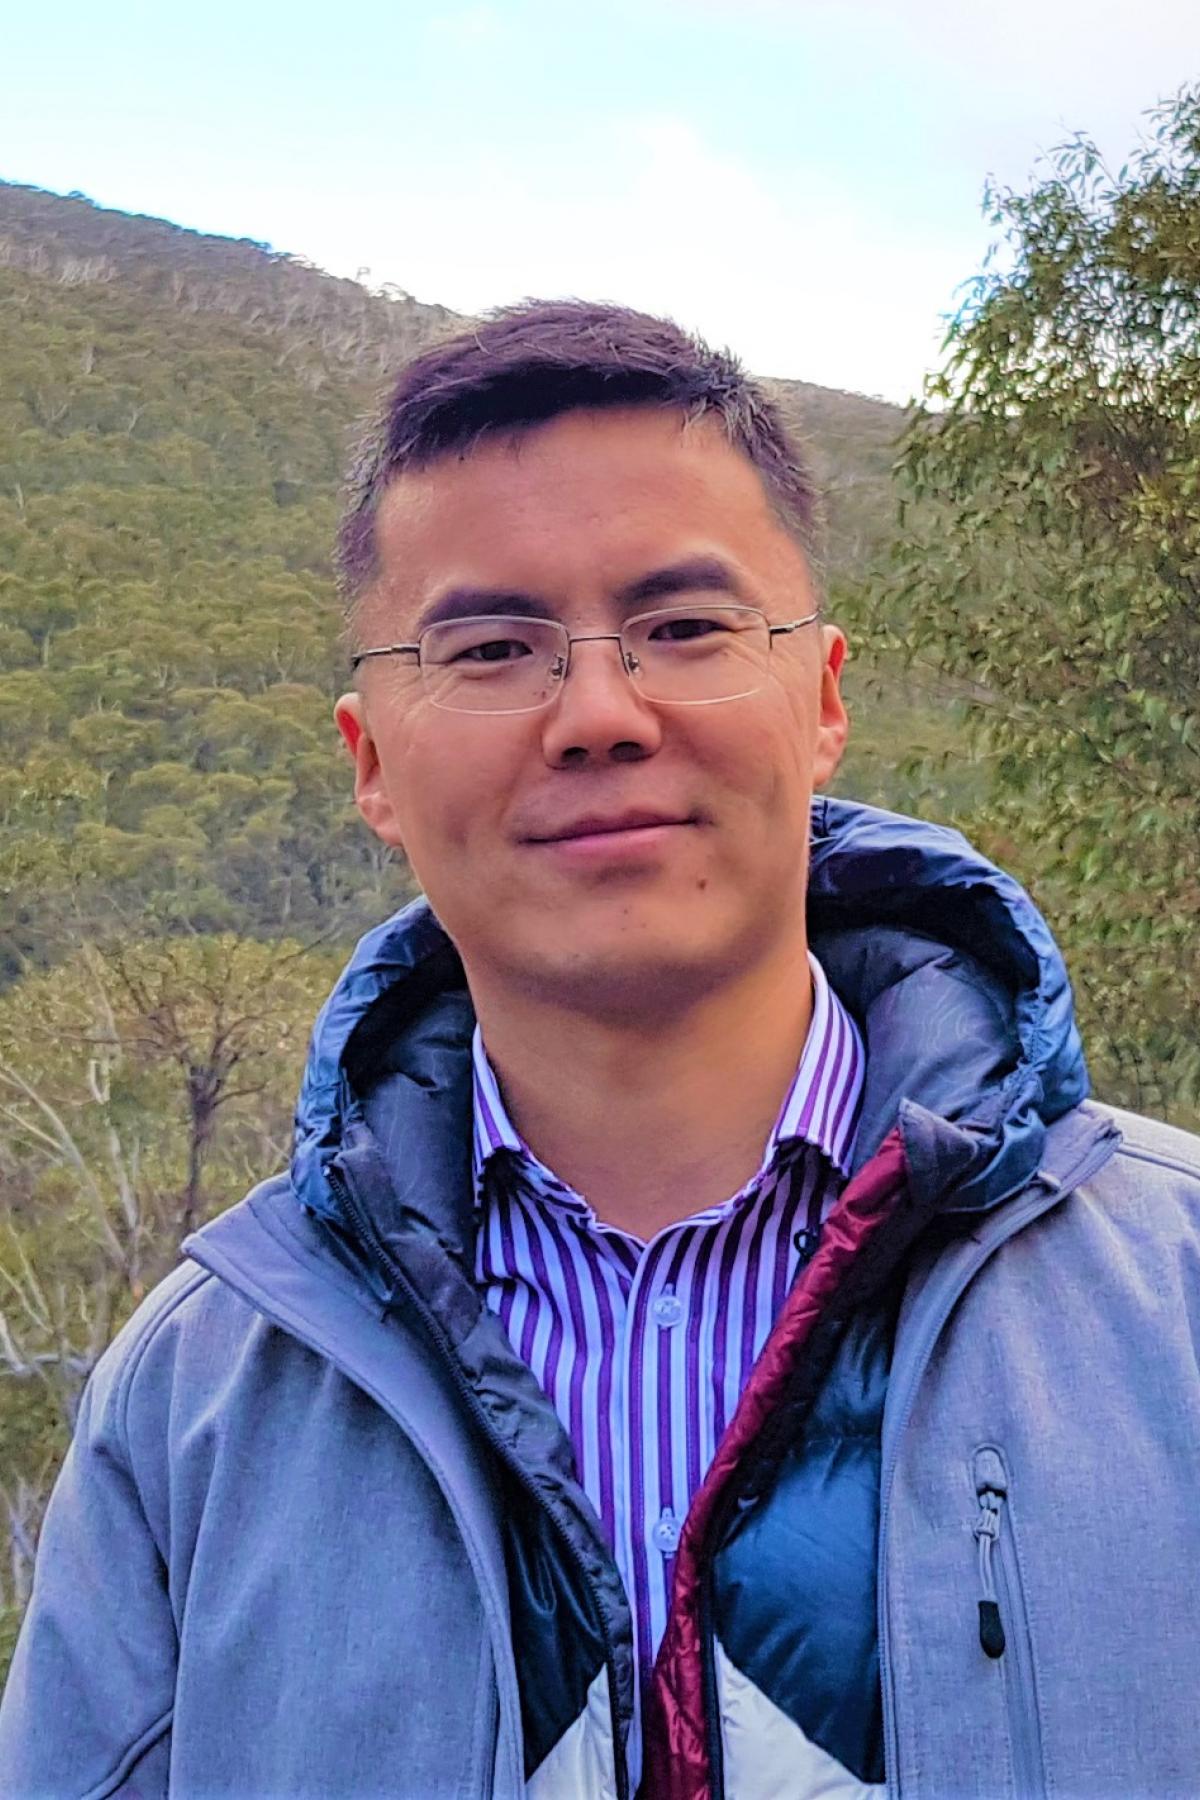 Dr. Dawei Liu